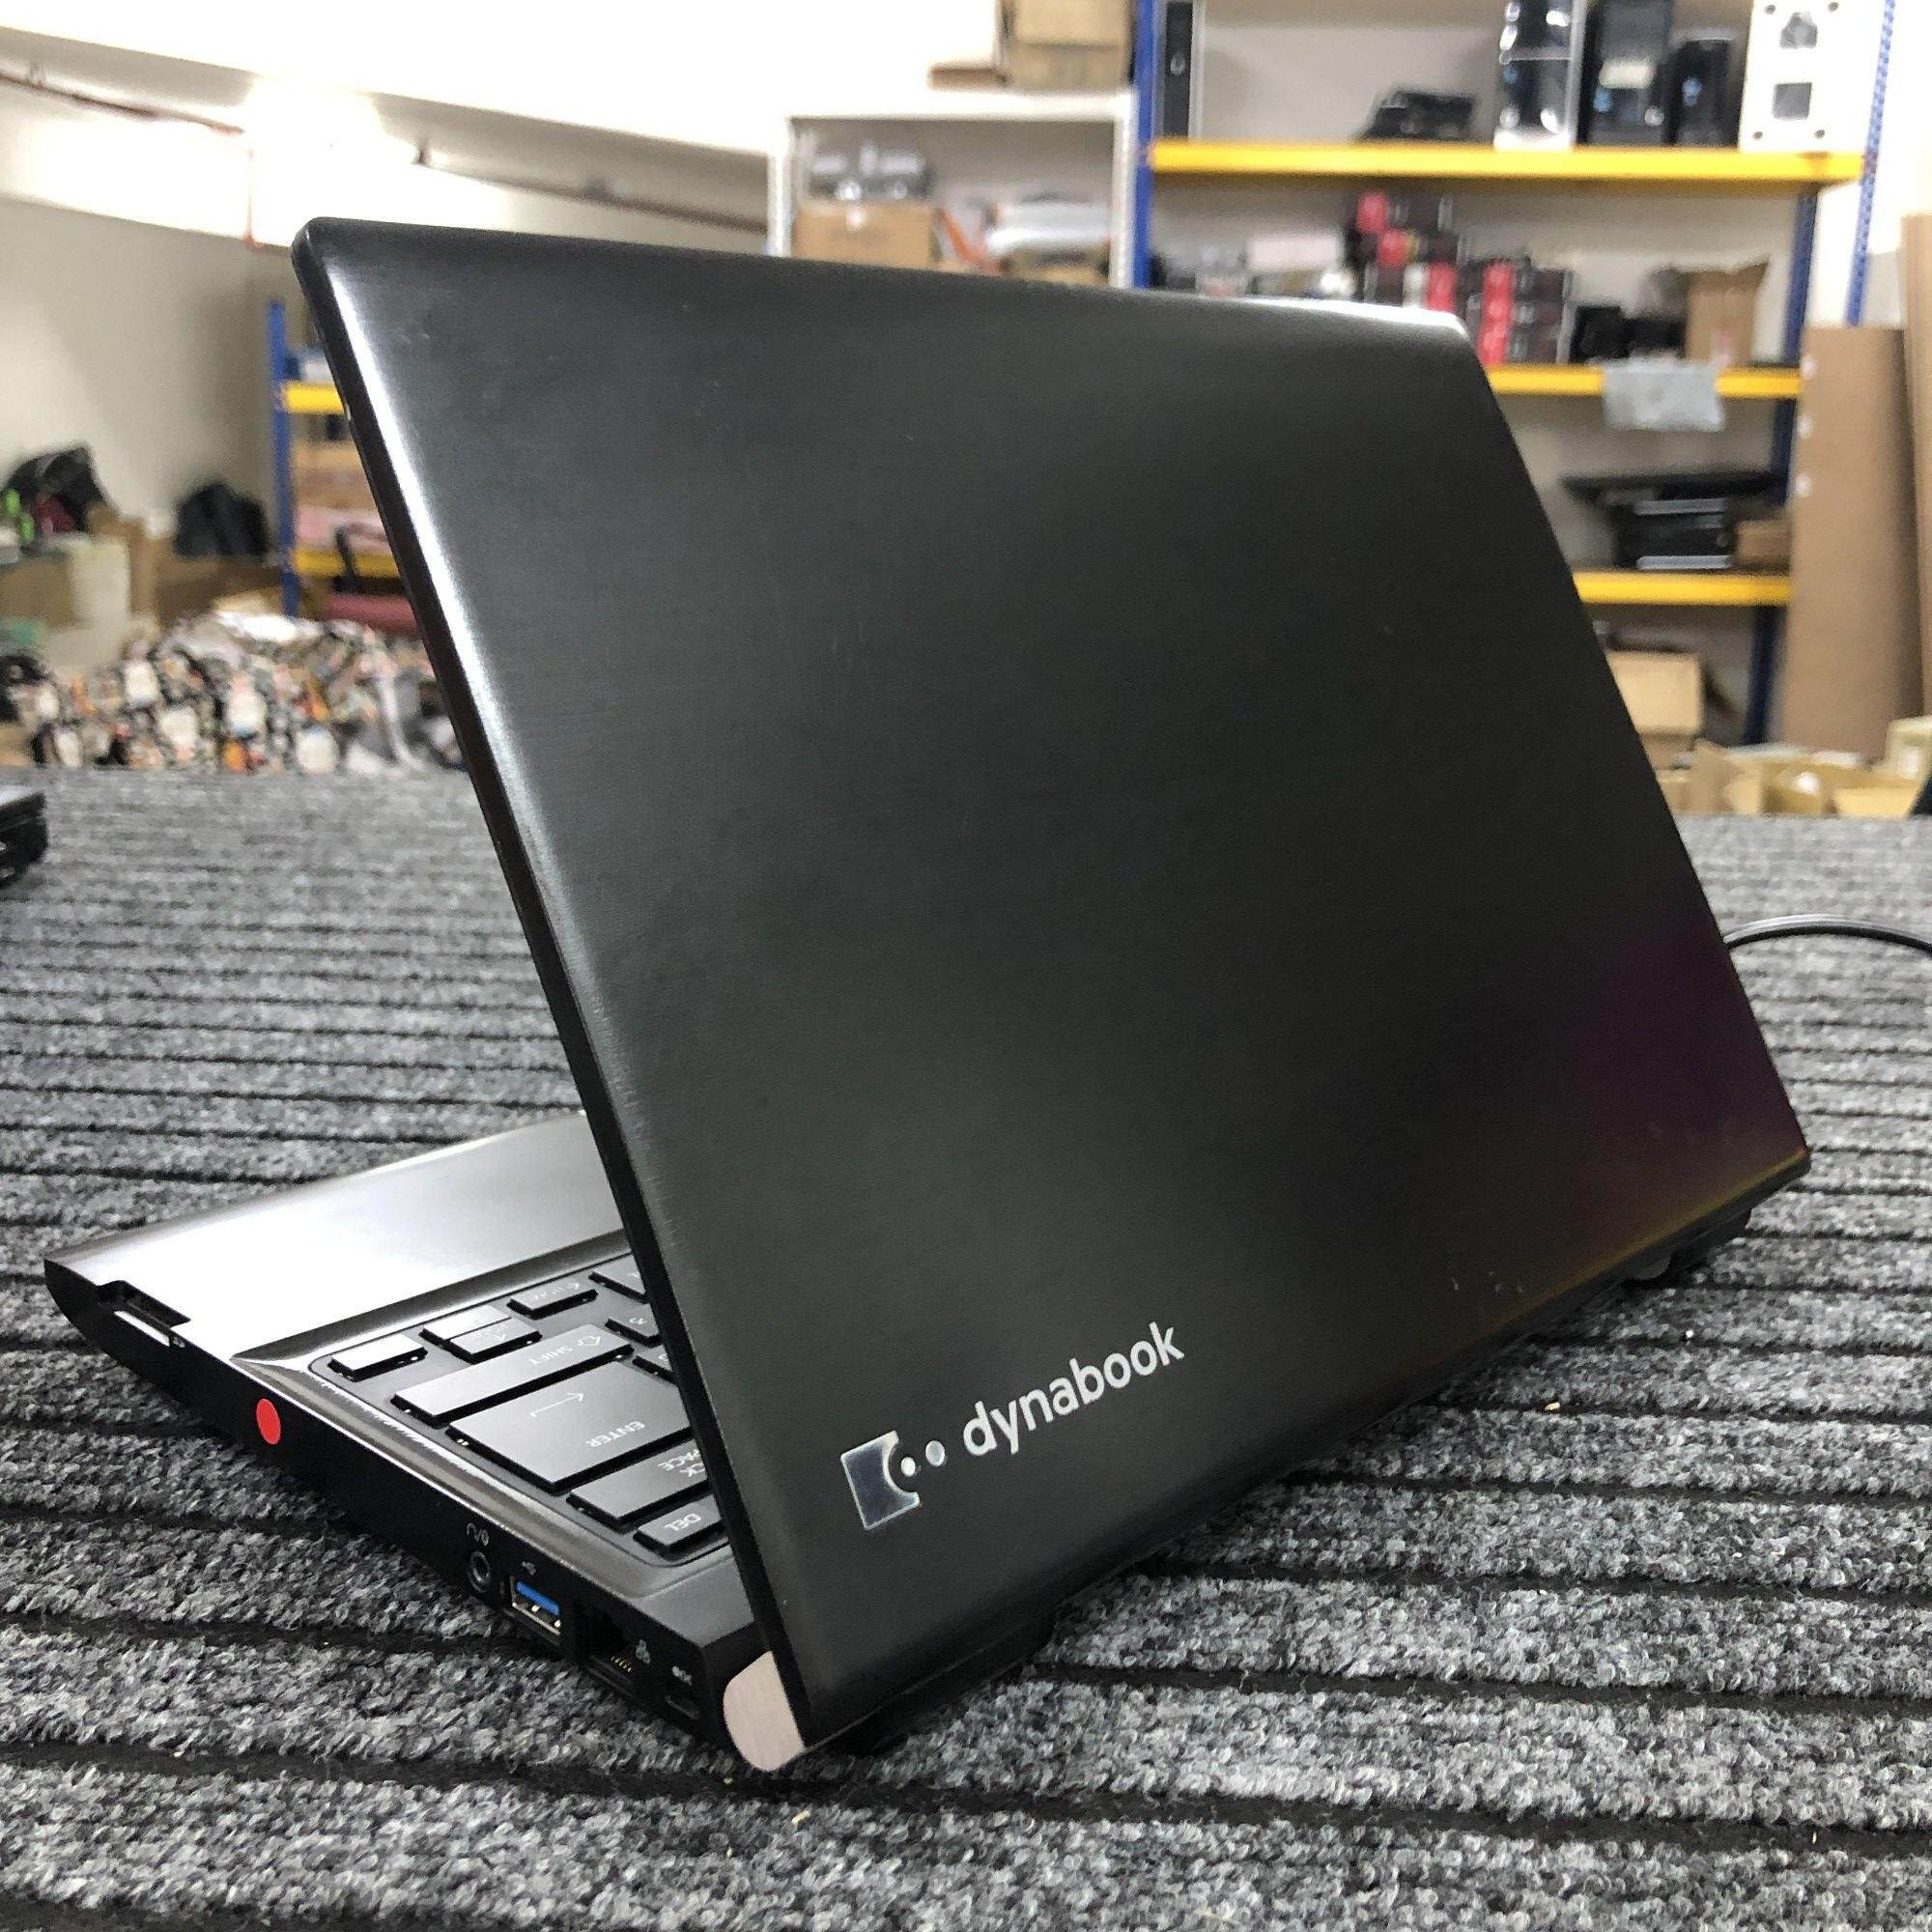 Toshiba DynaBook R734/M - Intel I5-4130M / 4GB DDR3 Ram / 250GB 